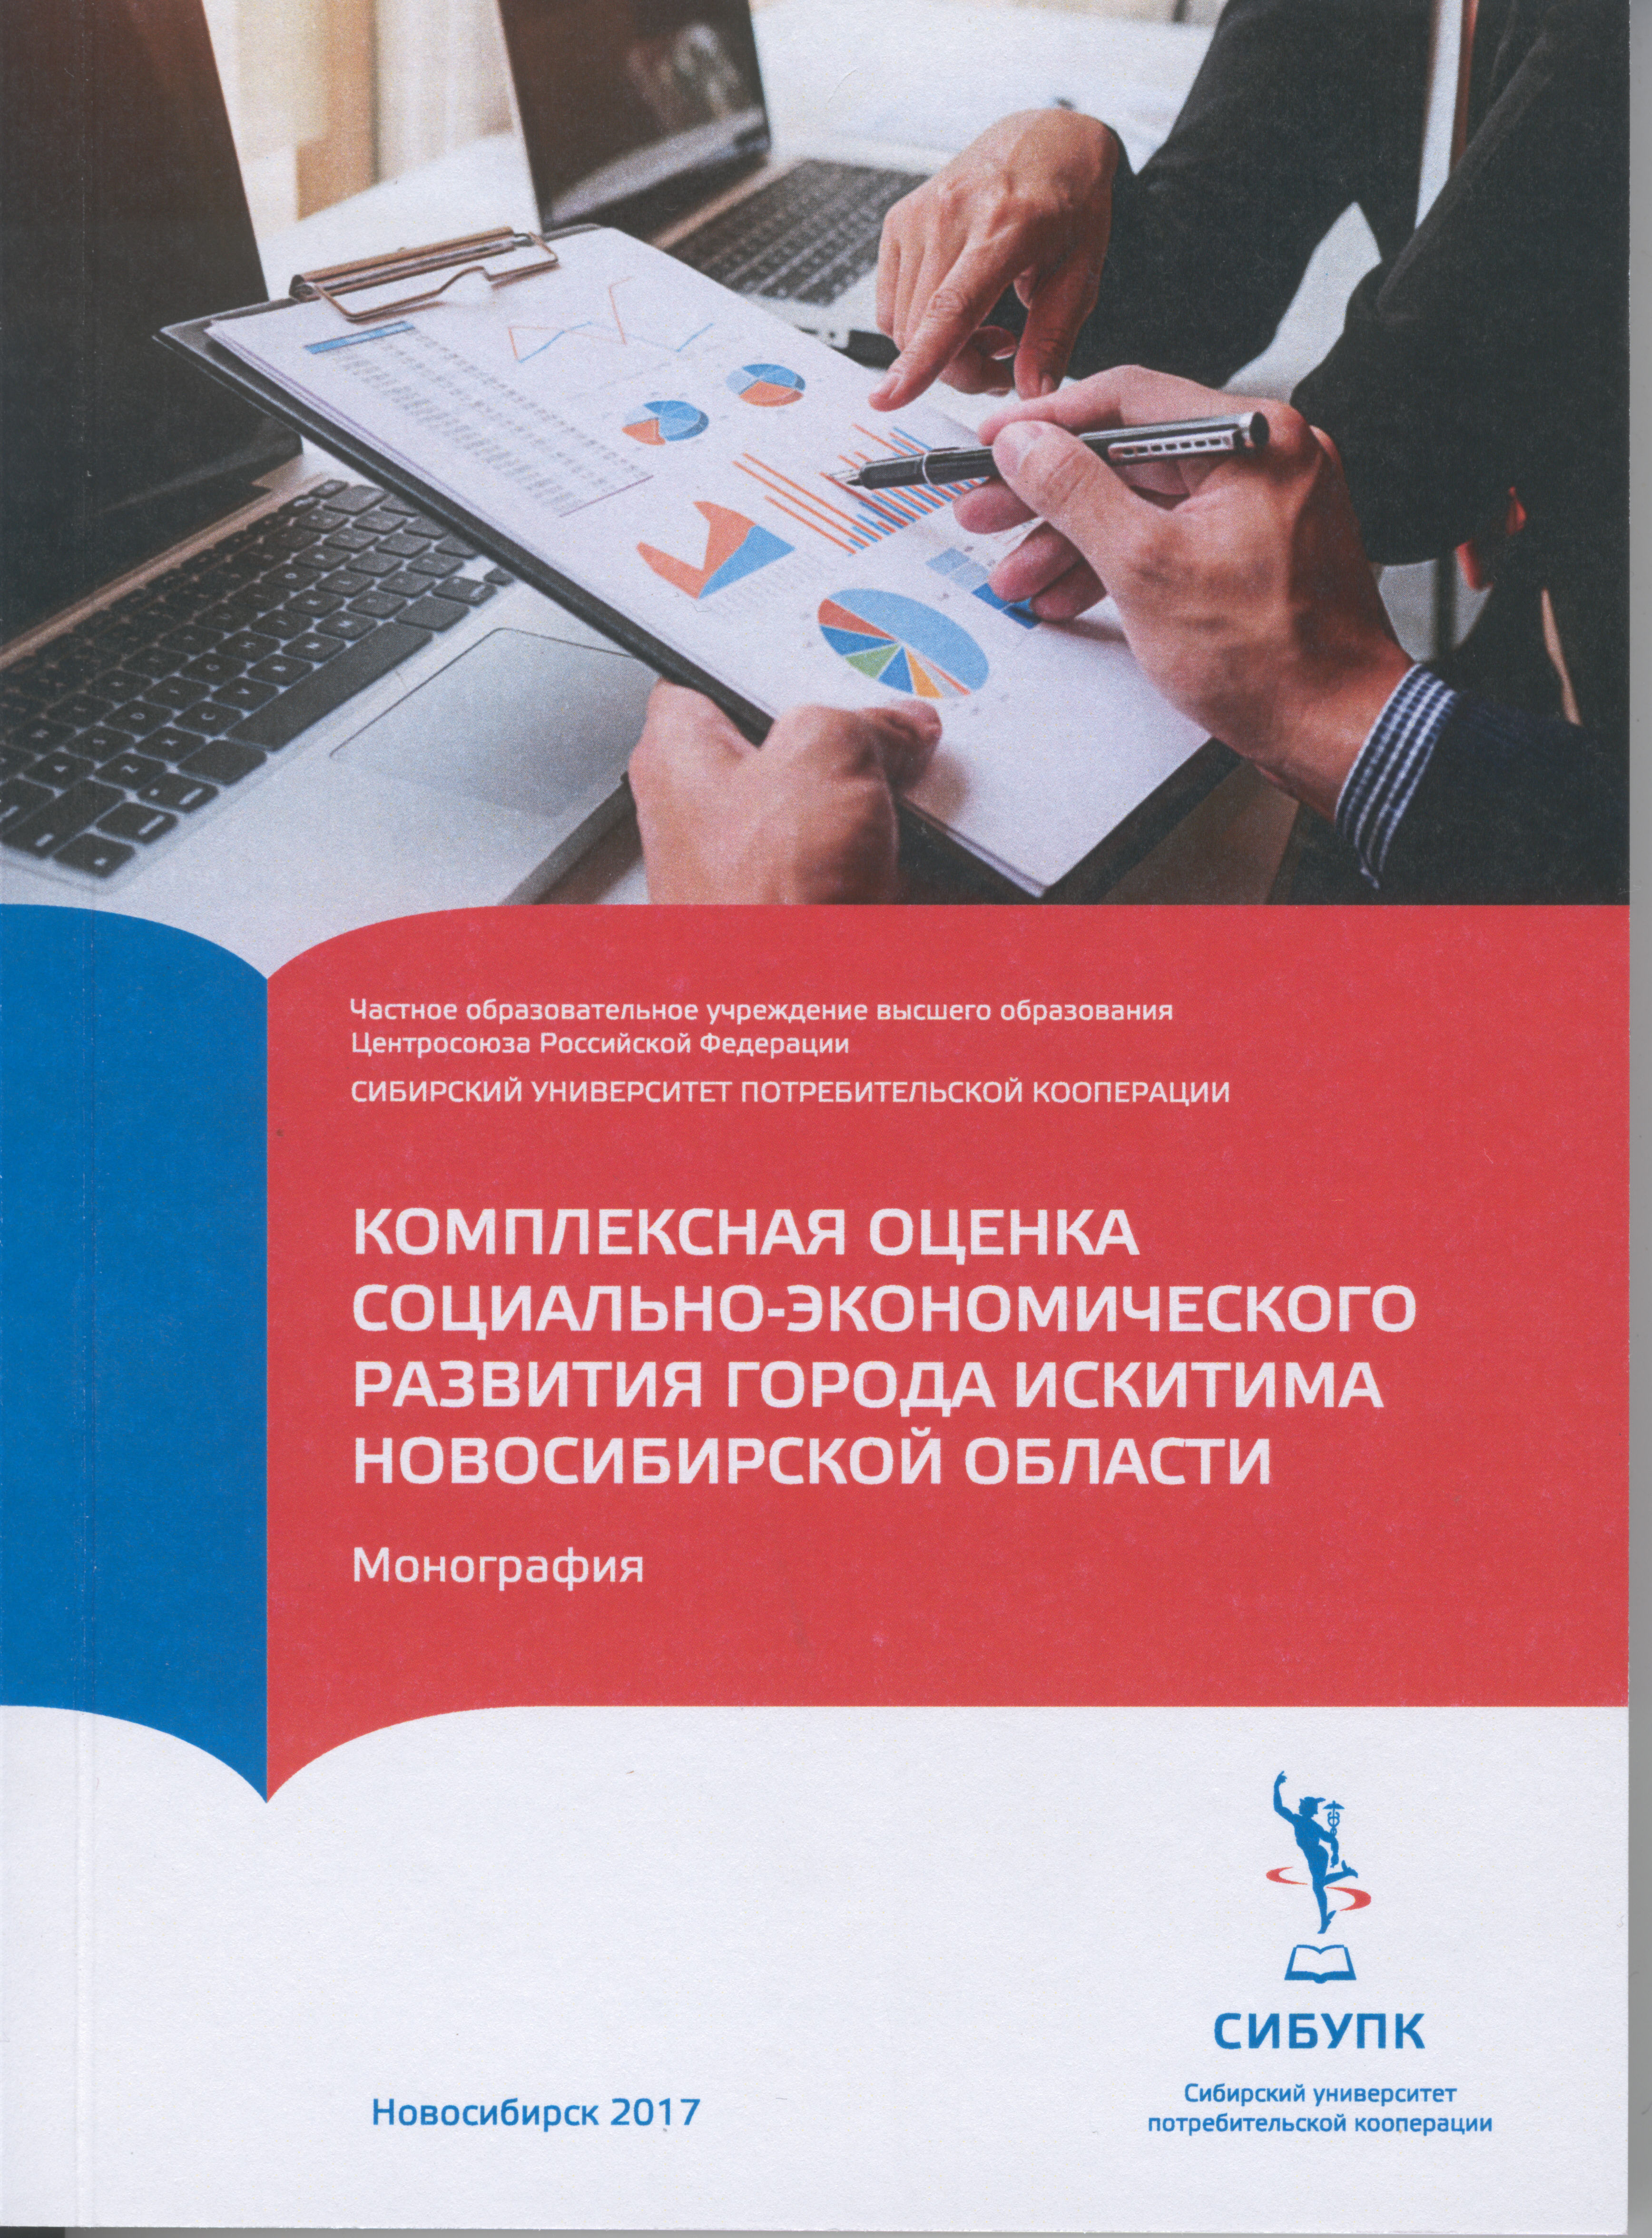 Комплексная оценка социально-экономического развития города Искитима Новосибирской области